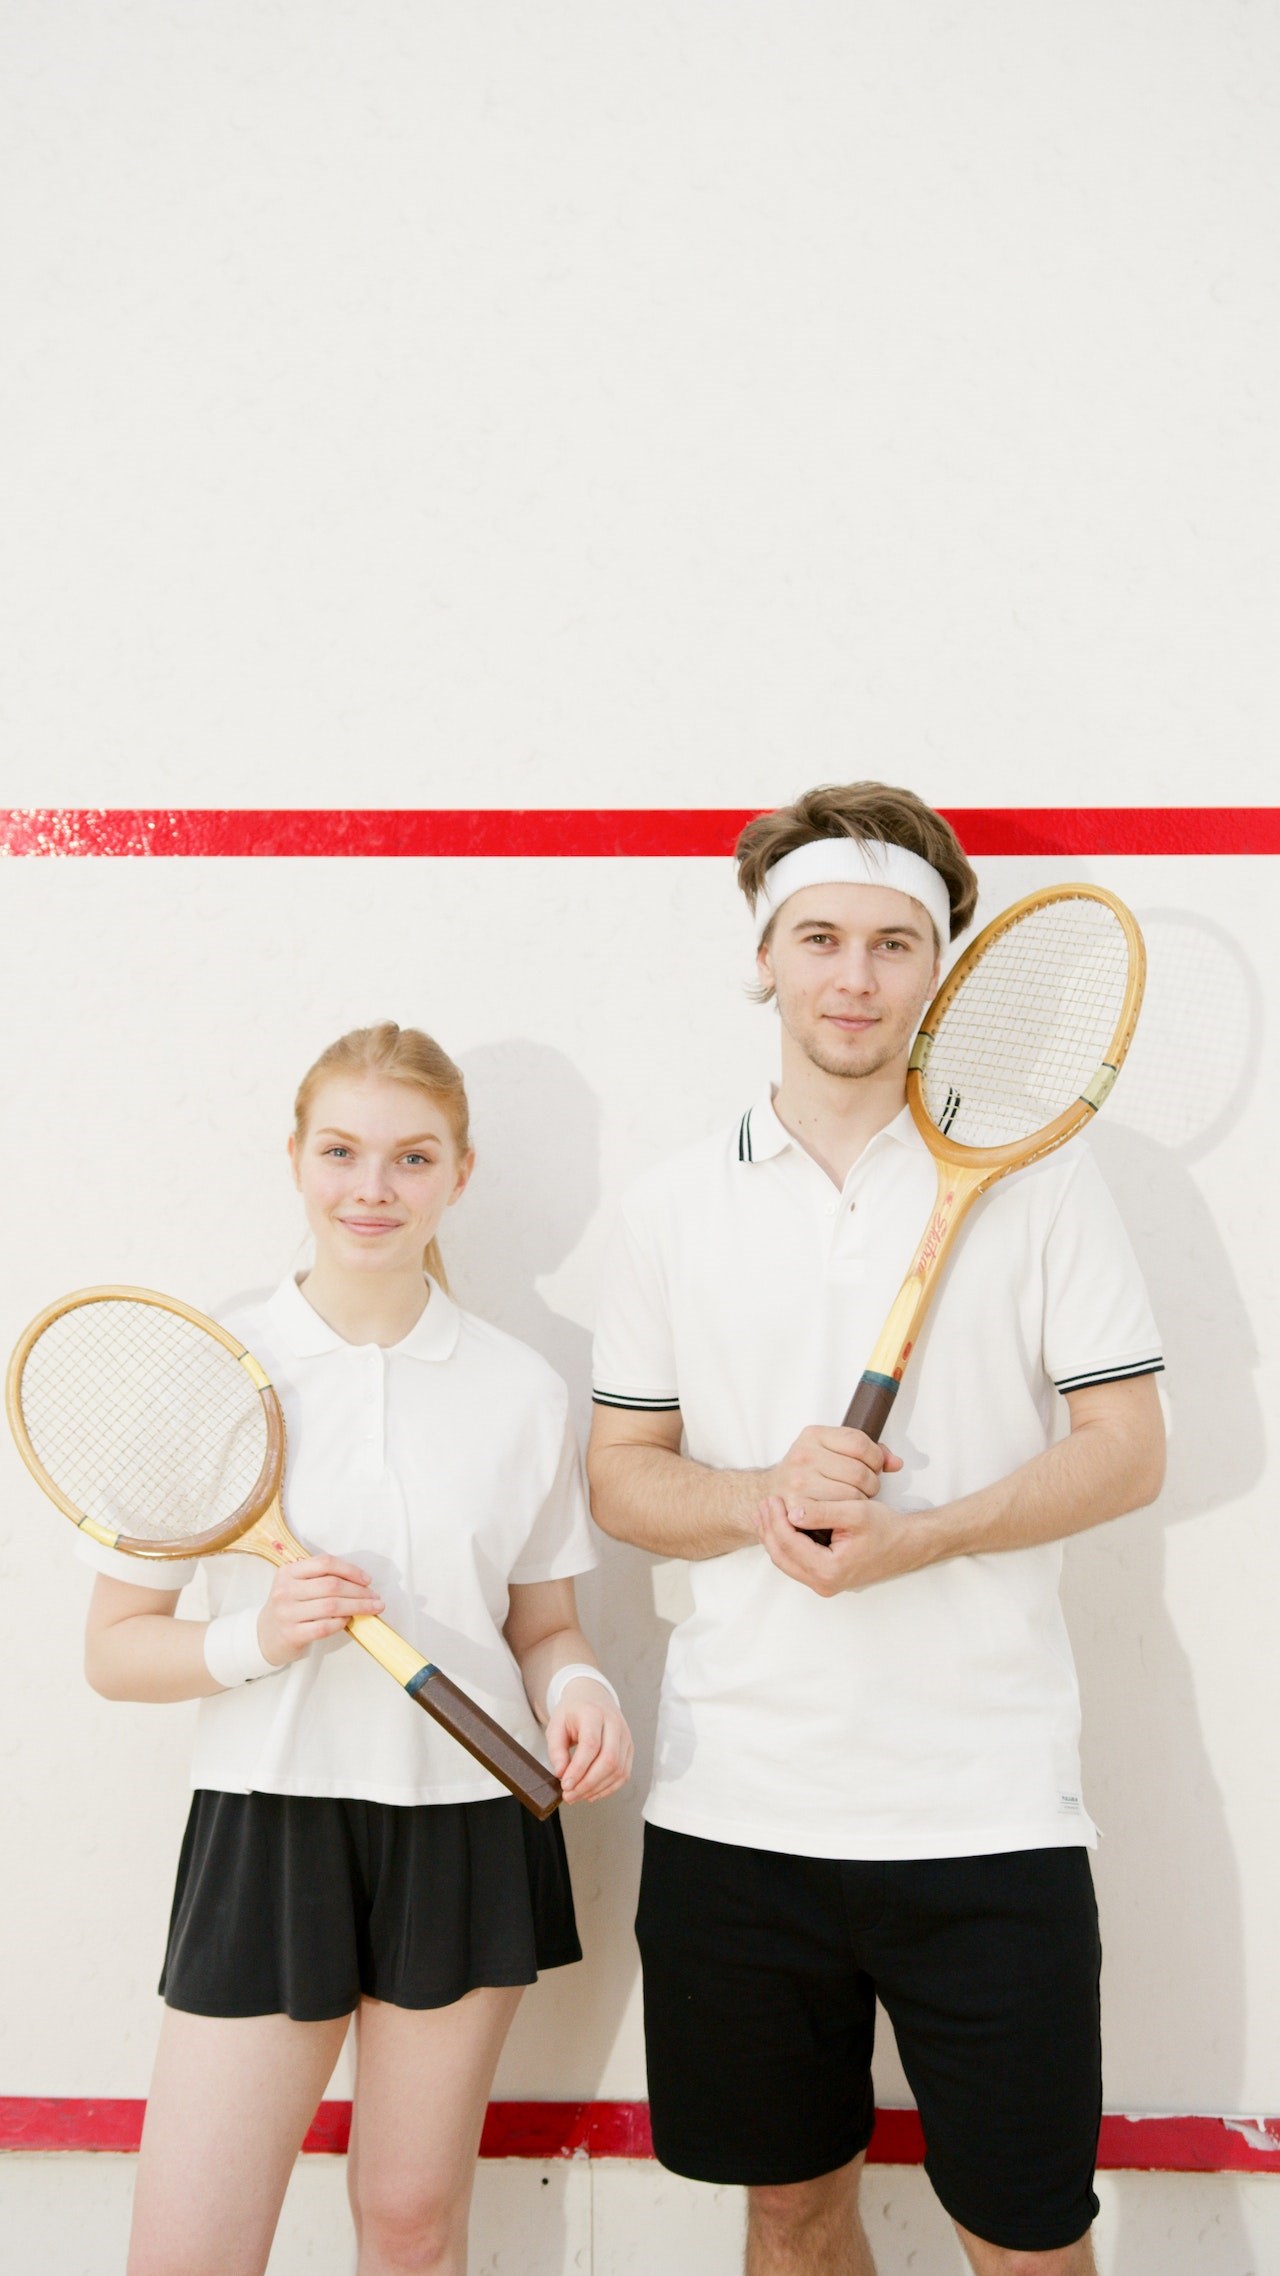 En kvindelig og en mandling squashspiller. Foto: Pexels.com